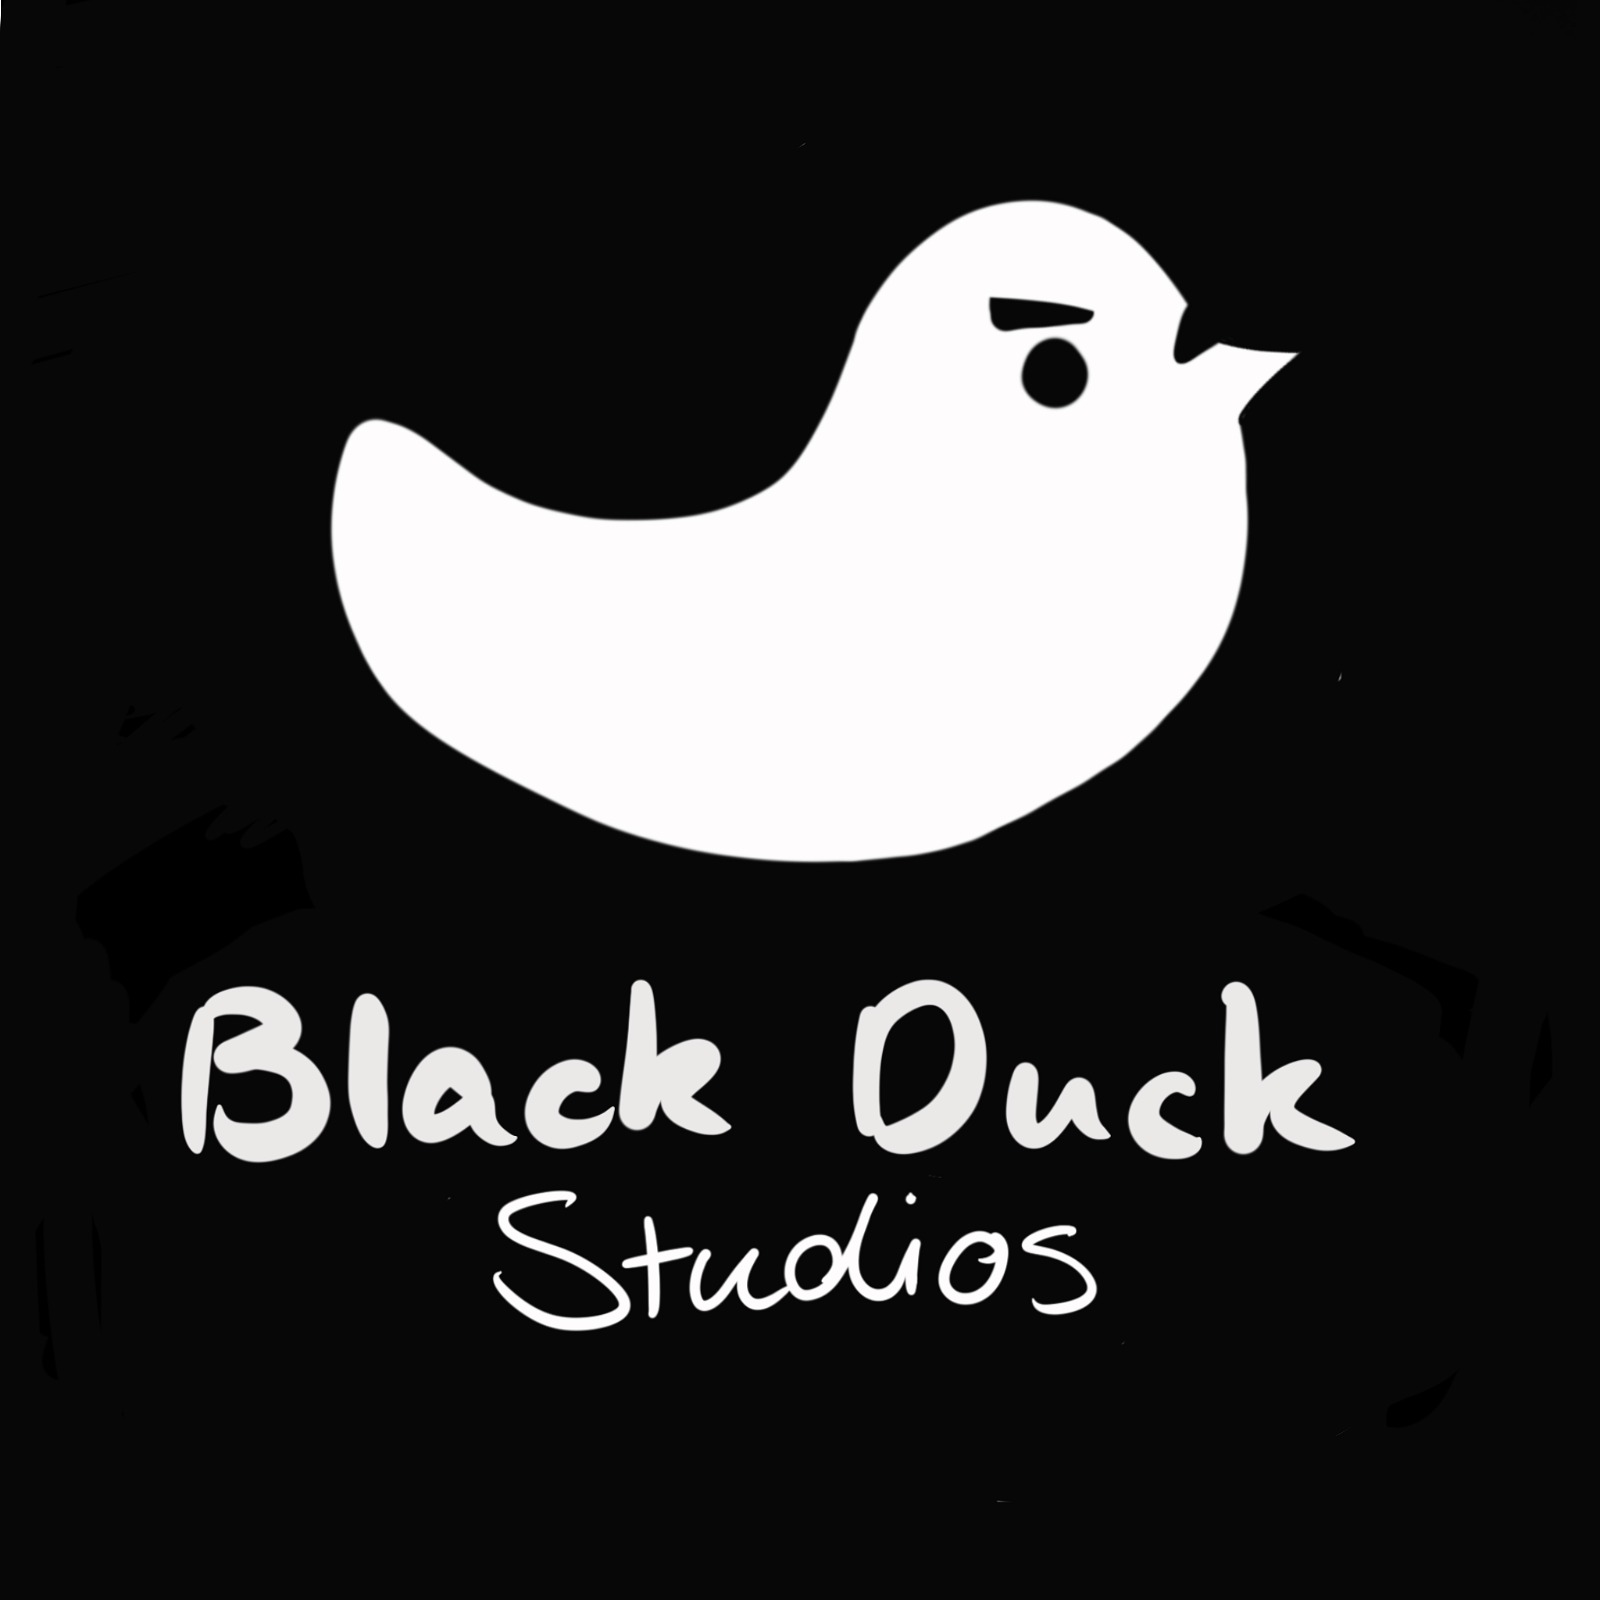 Black Duck Studios